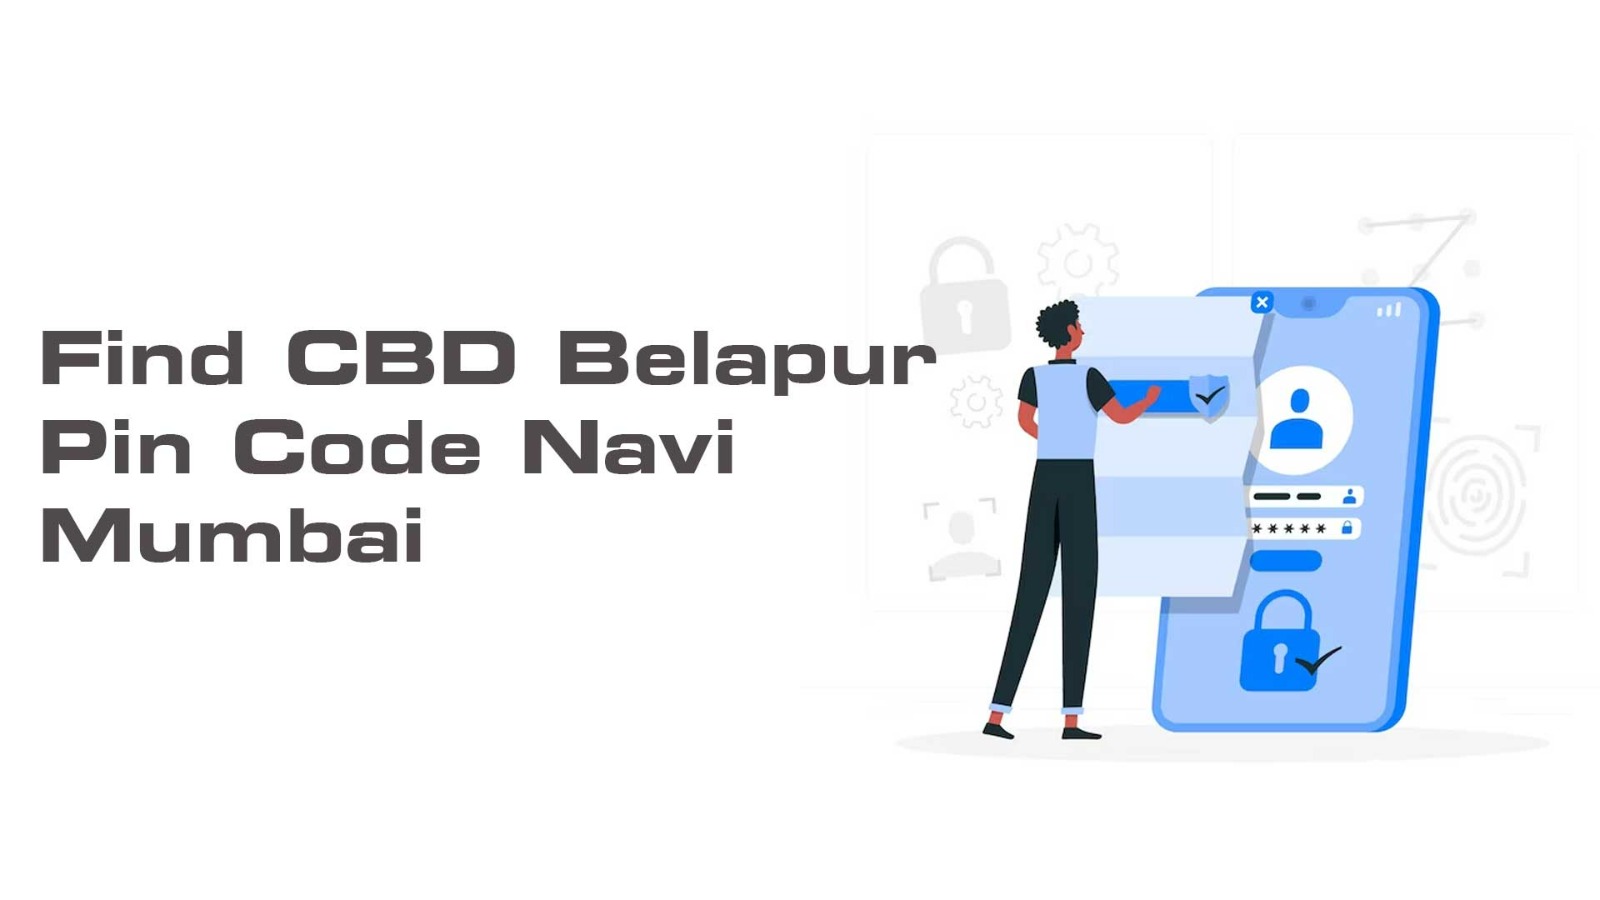 Find CBD Belapur Pin Code Navi Mumbai